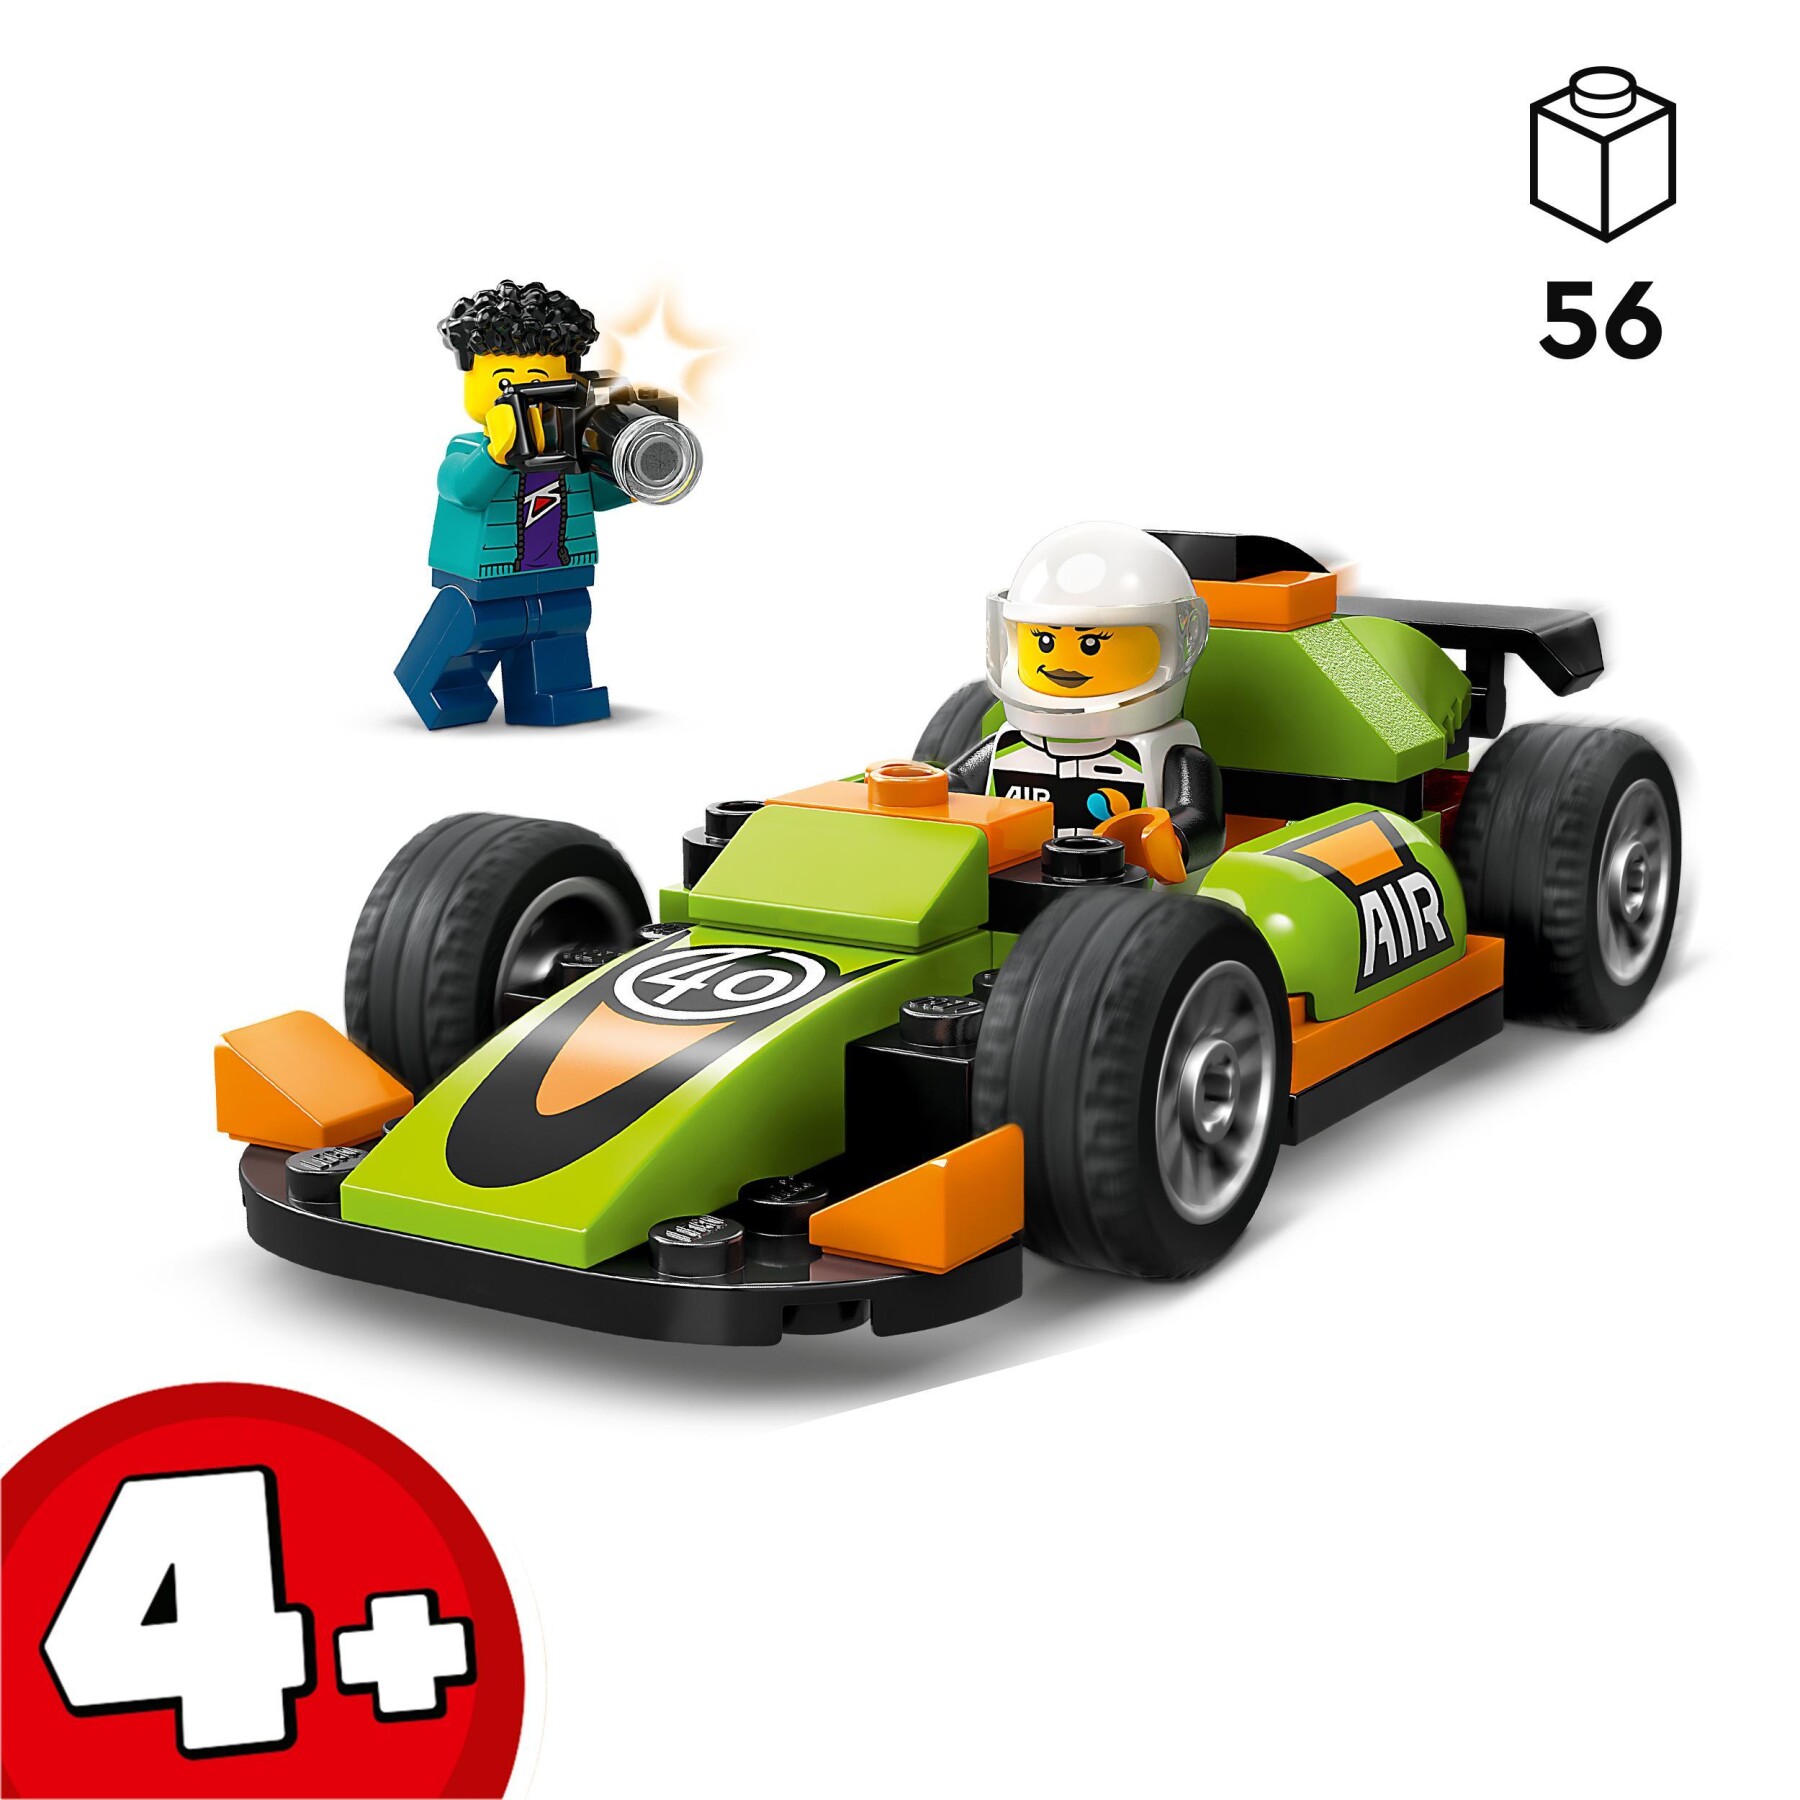 Lego city 60399 auto da corsa verde, macchina giocattolo per bambini di 4+ anni, modellino da costruire di veicolo formula 1 - LEGO CITY